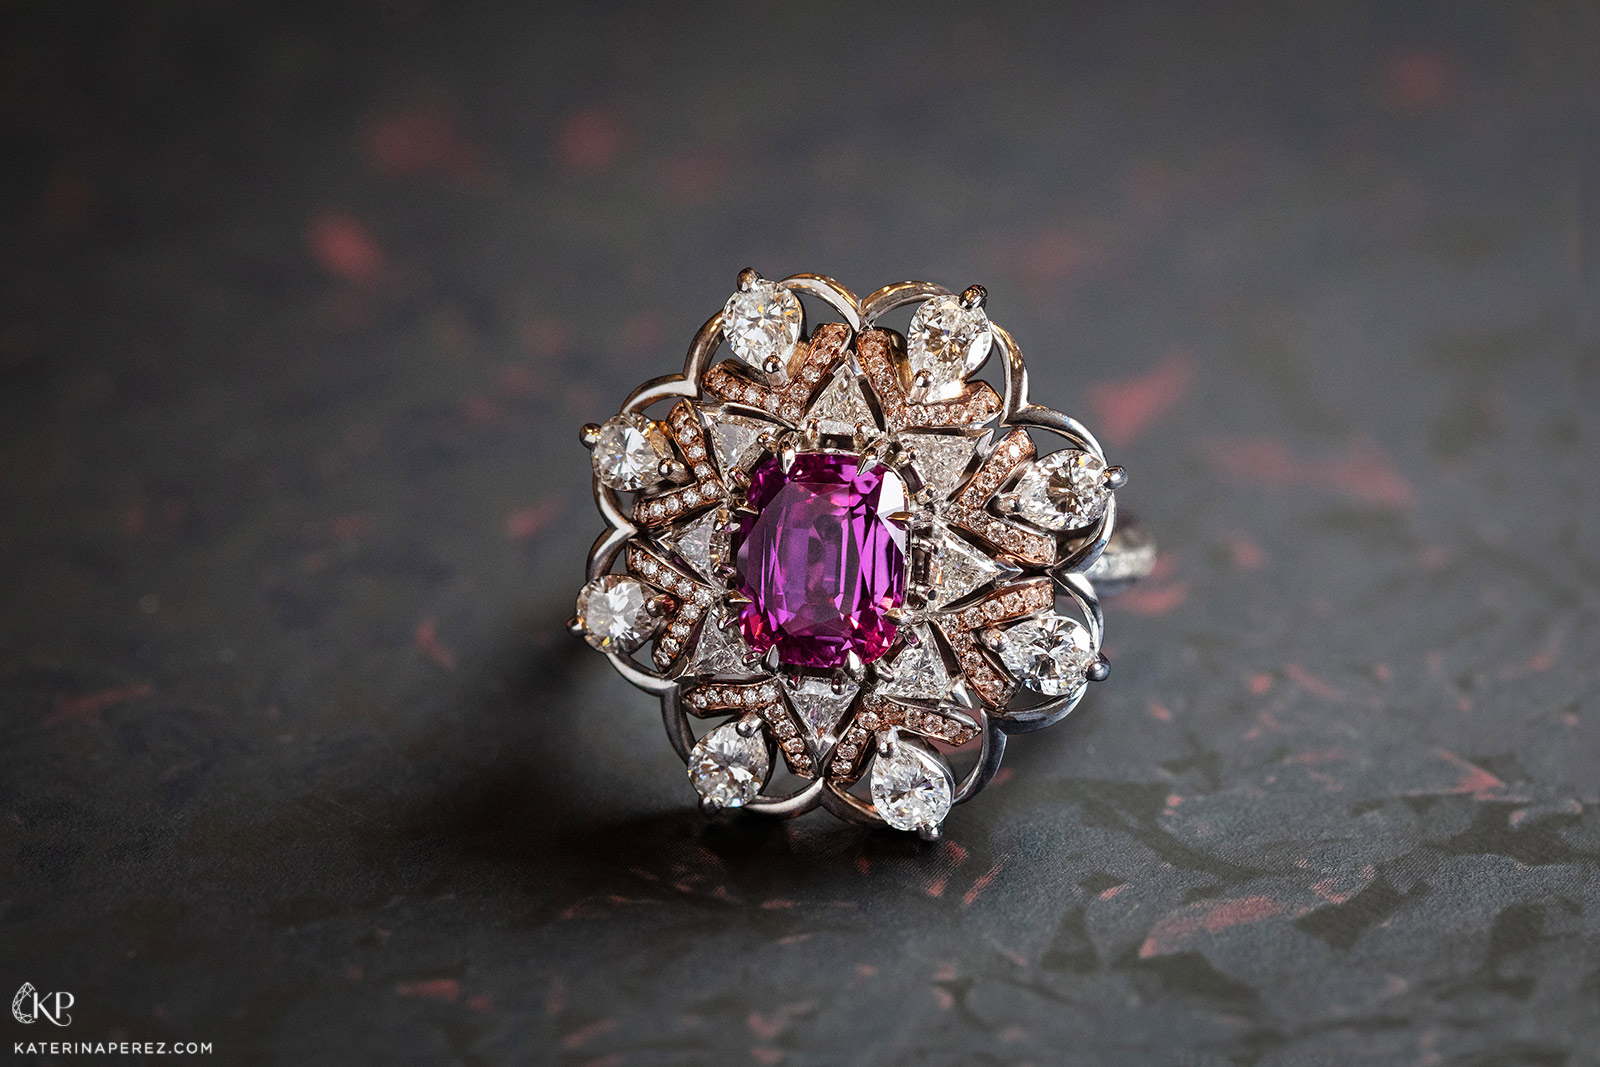 Кольцо Calleija ‘Ciana’ из коллекции 'Couture' из розового и желтого золота с розовым сапфиром 2.58ct и бриллиантами